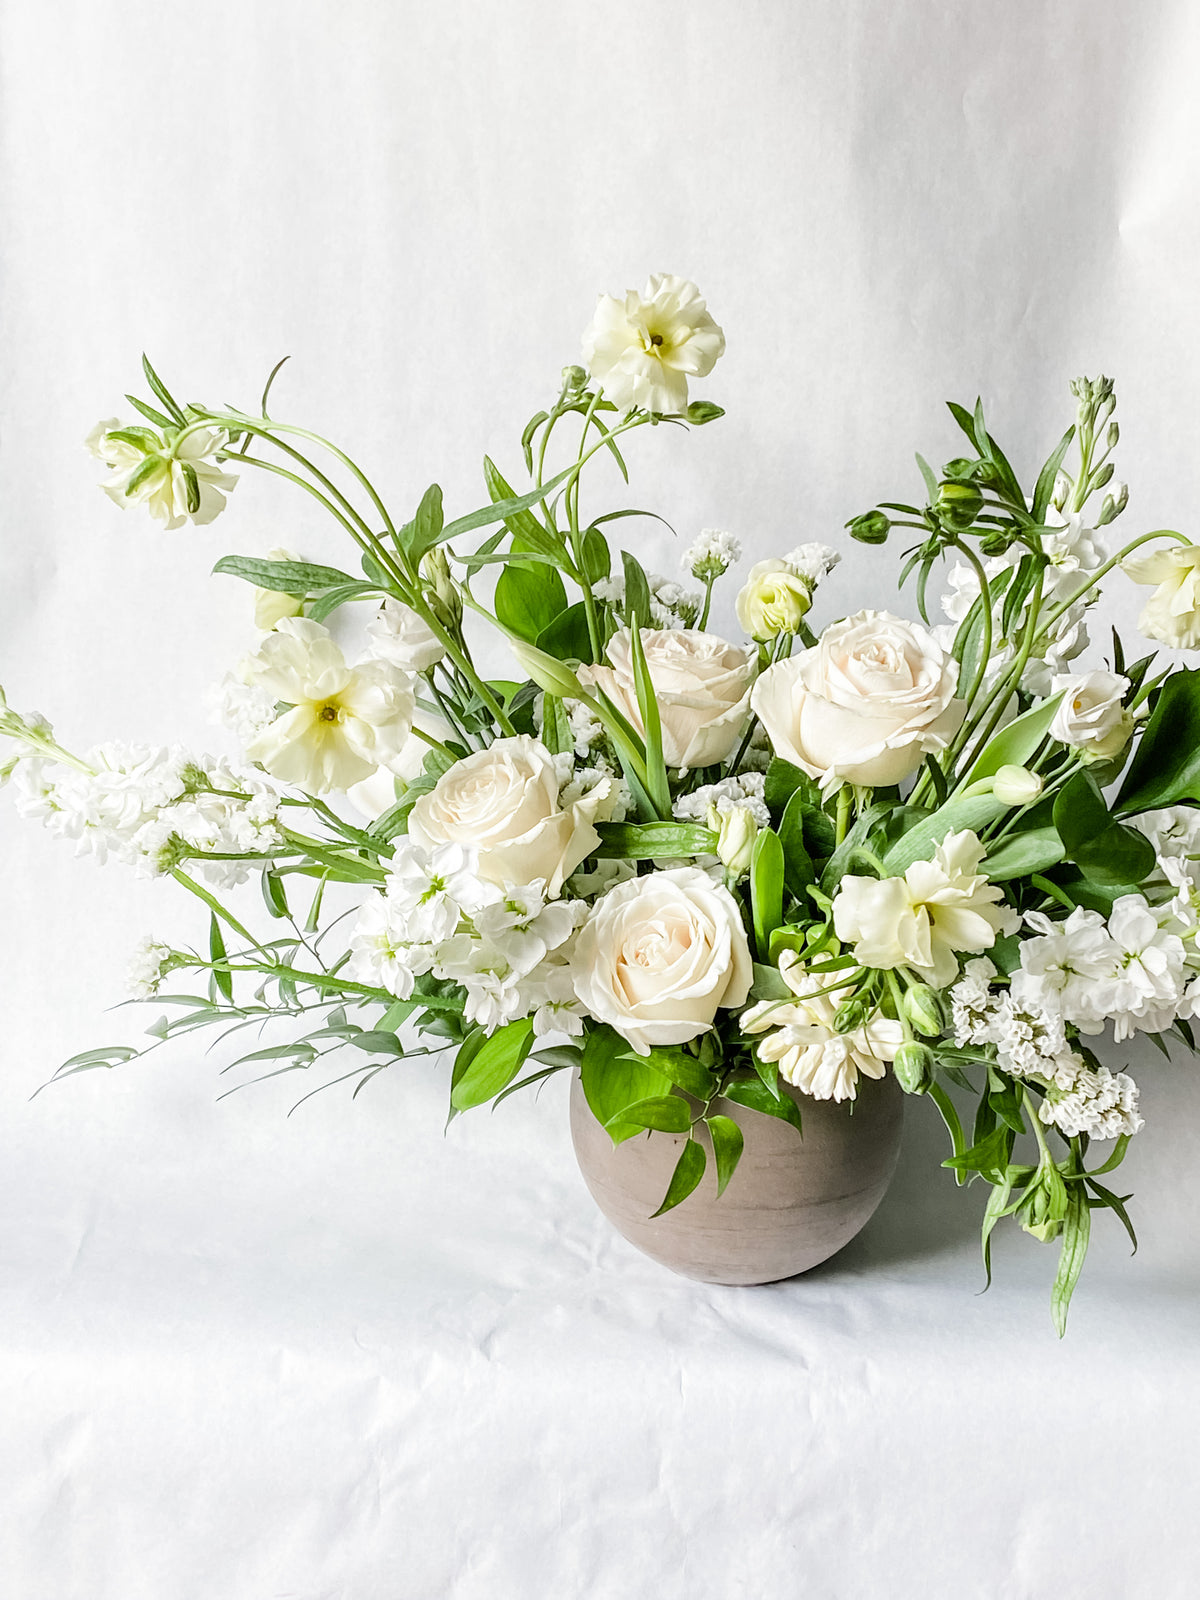 Living Fresh - Large Sympathy or Celebration Vase Arrangement